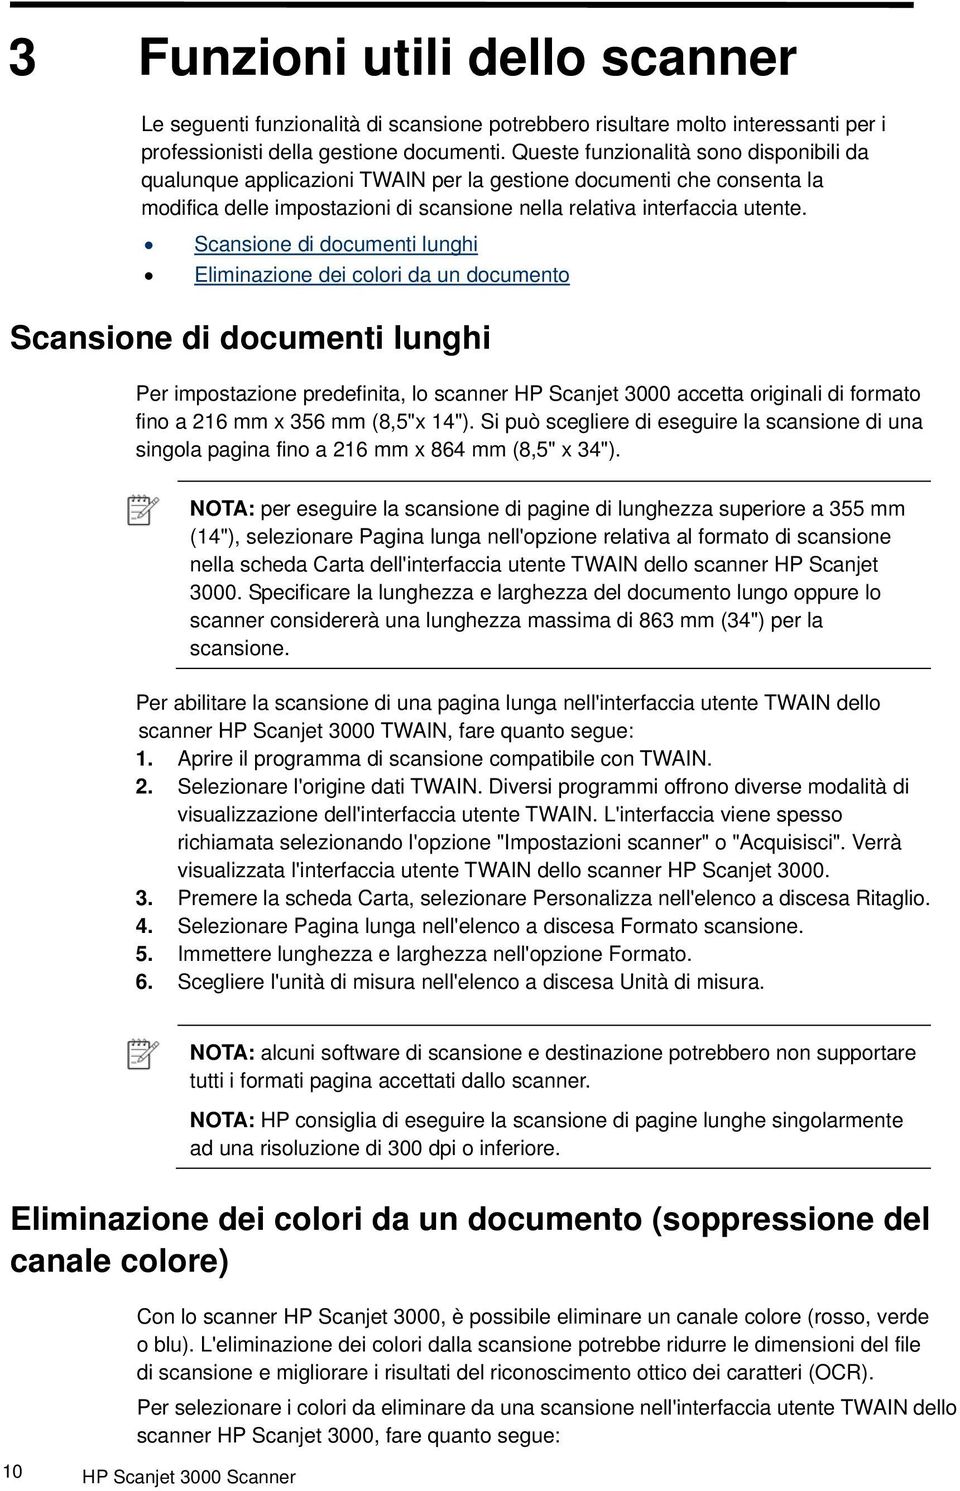 Scansione di documenti lunghi Eliminazione dei colori da un documento Scansione di documenti lunghi Per impostazione predefinita, lo scanner HP Scanjet 3000 accetta originali di formato fino a 216 mm